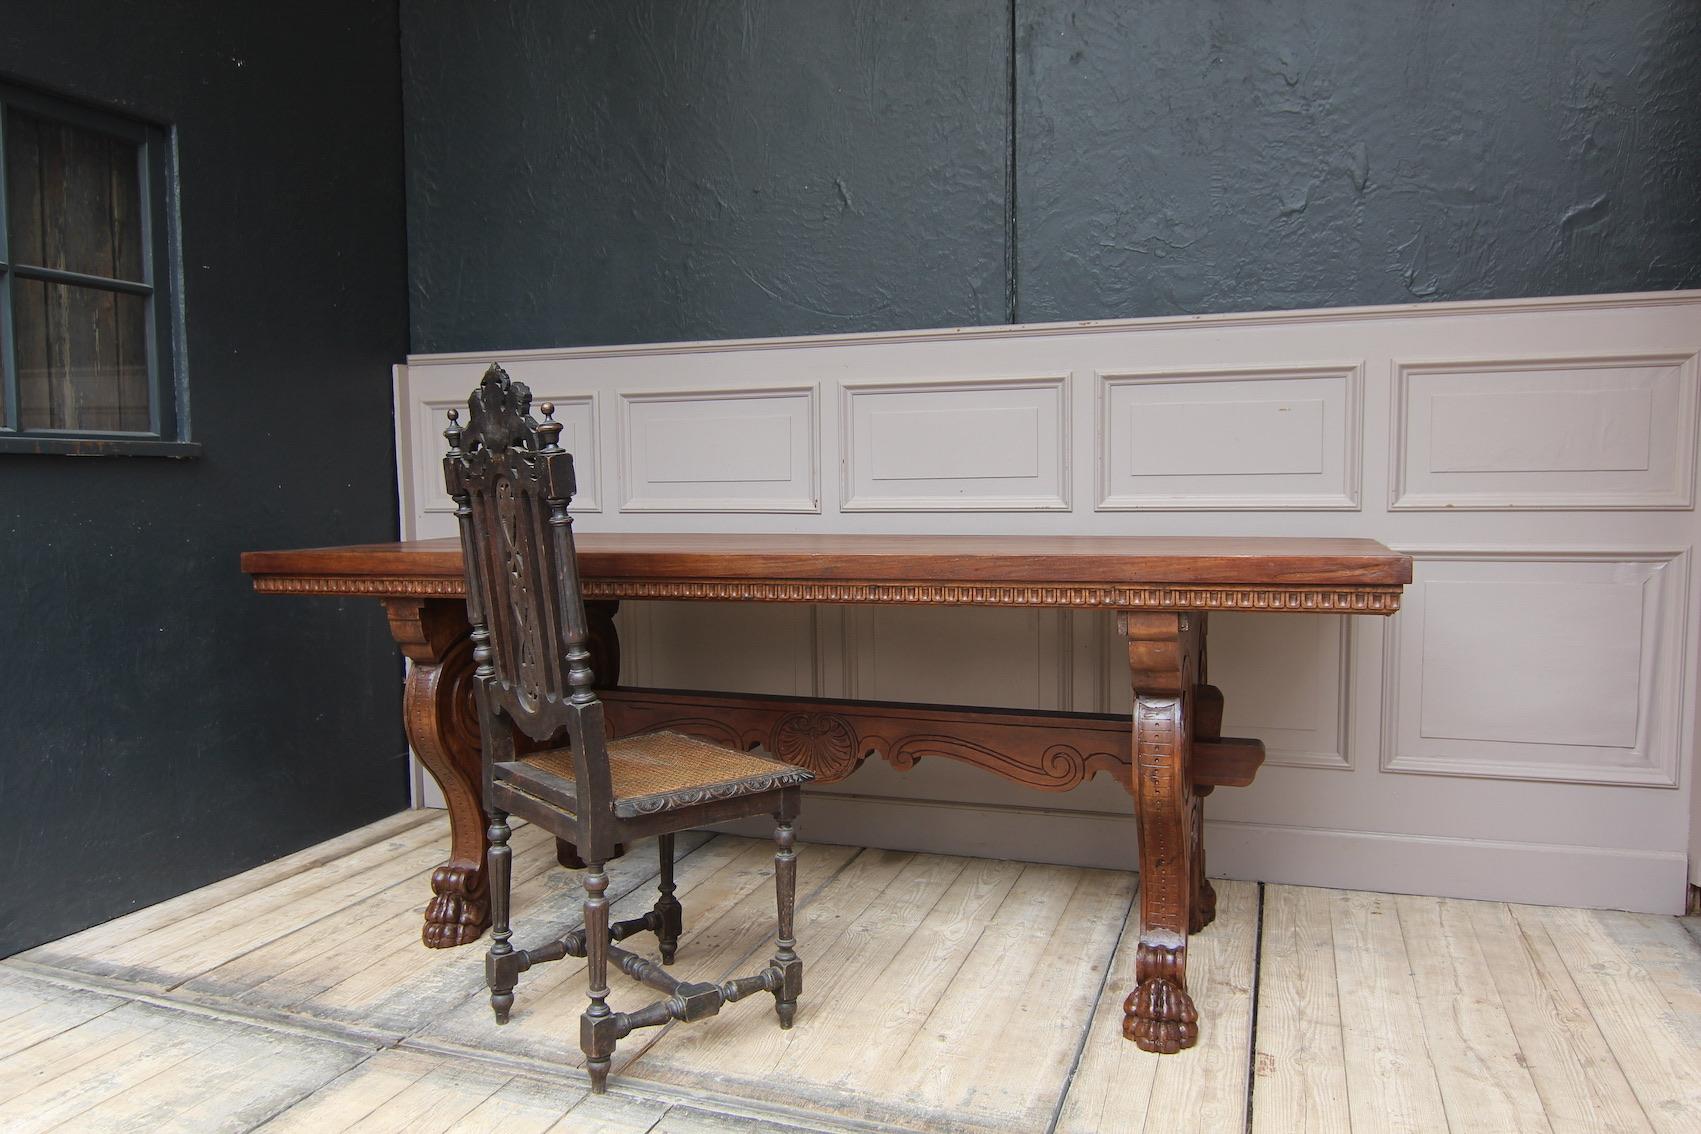 Ein italienischer Schreibtisch aus dem 19. Jahrhundert im Renaissance-Stil aus massivem Nussbaumholz.

Der Tisch kann als Schreibtisch oder als Esstisch verwendet werden. Beide Seiten sehen gleich aus. 

Füße in Form von großen Doppelvoluten,